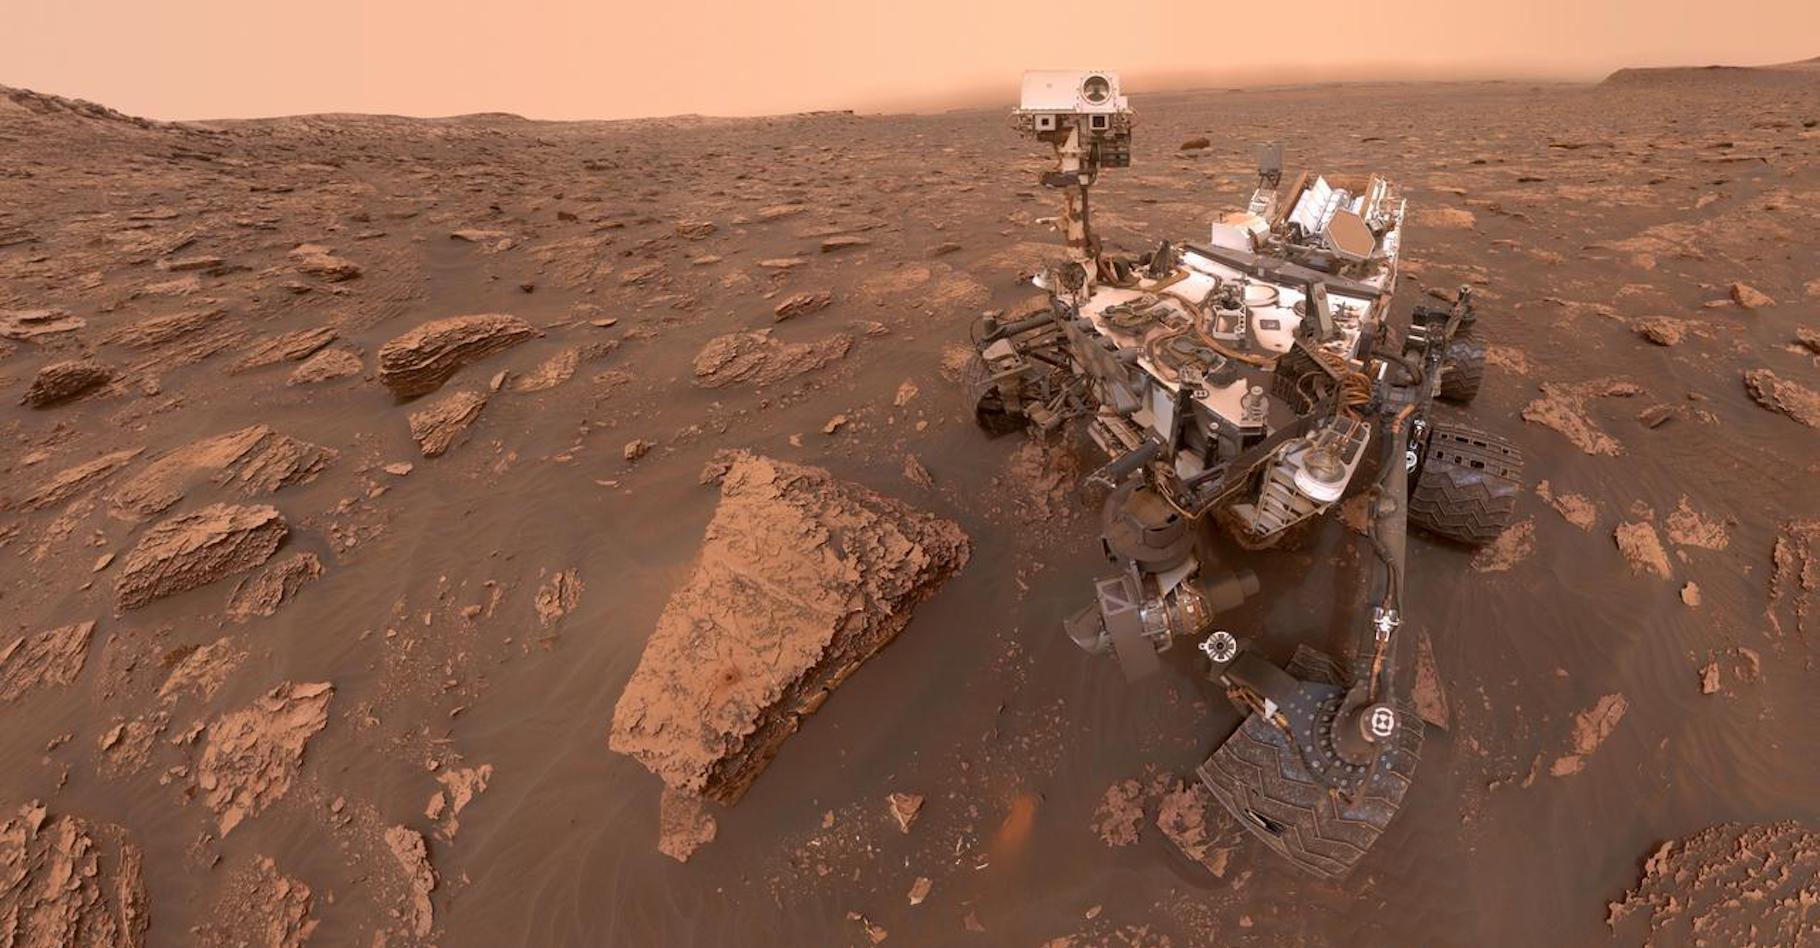 Selfie du rover Curiosity, sur Mars depuis 2012. © Nasa, JPL-Caltech, MSSS